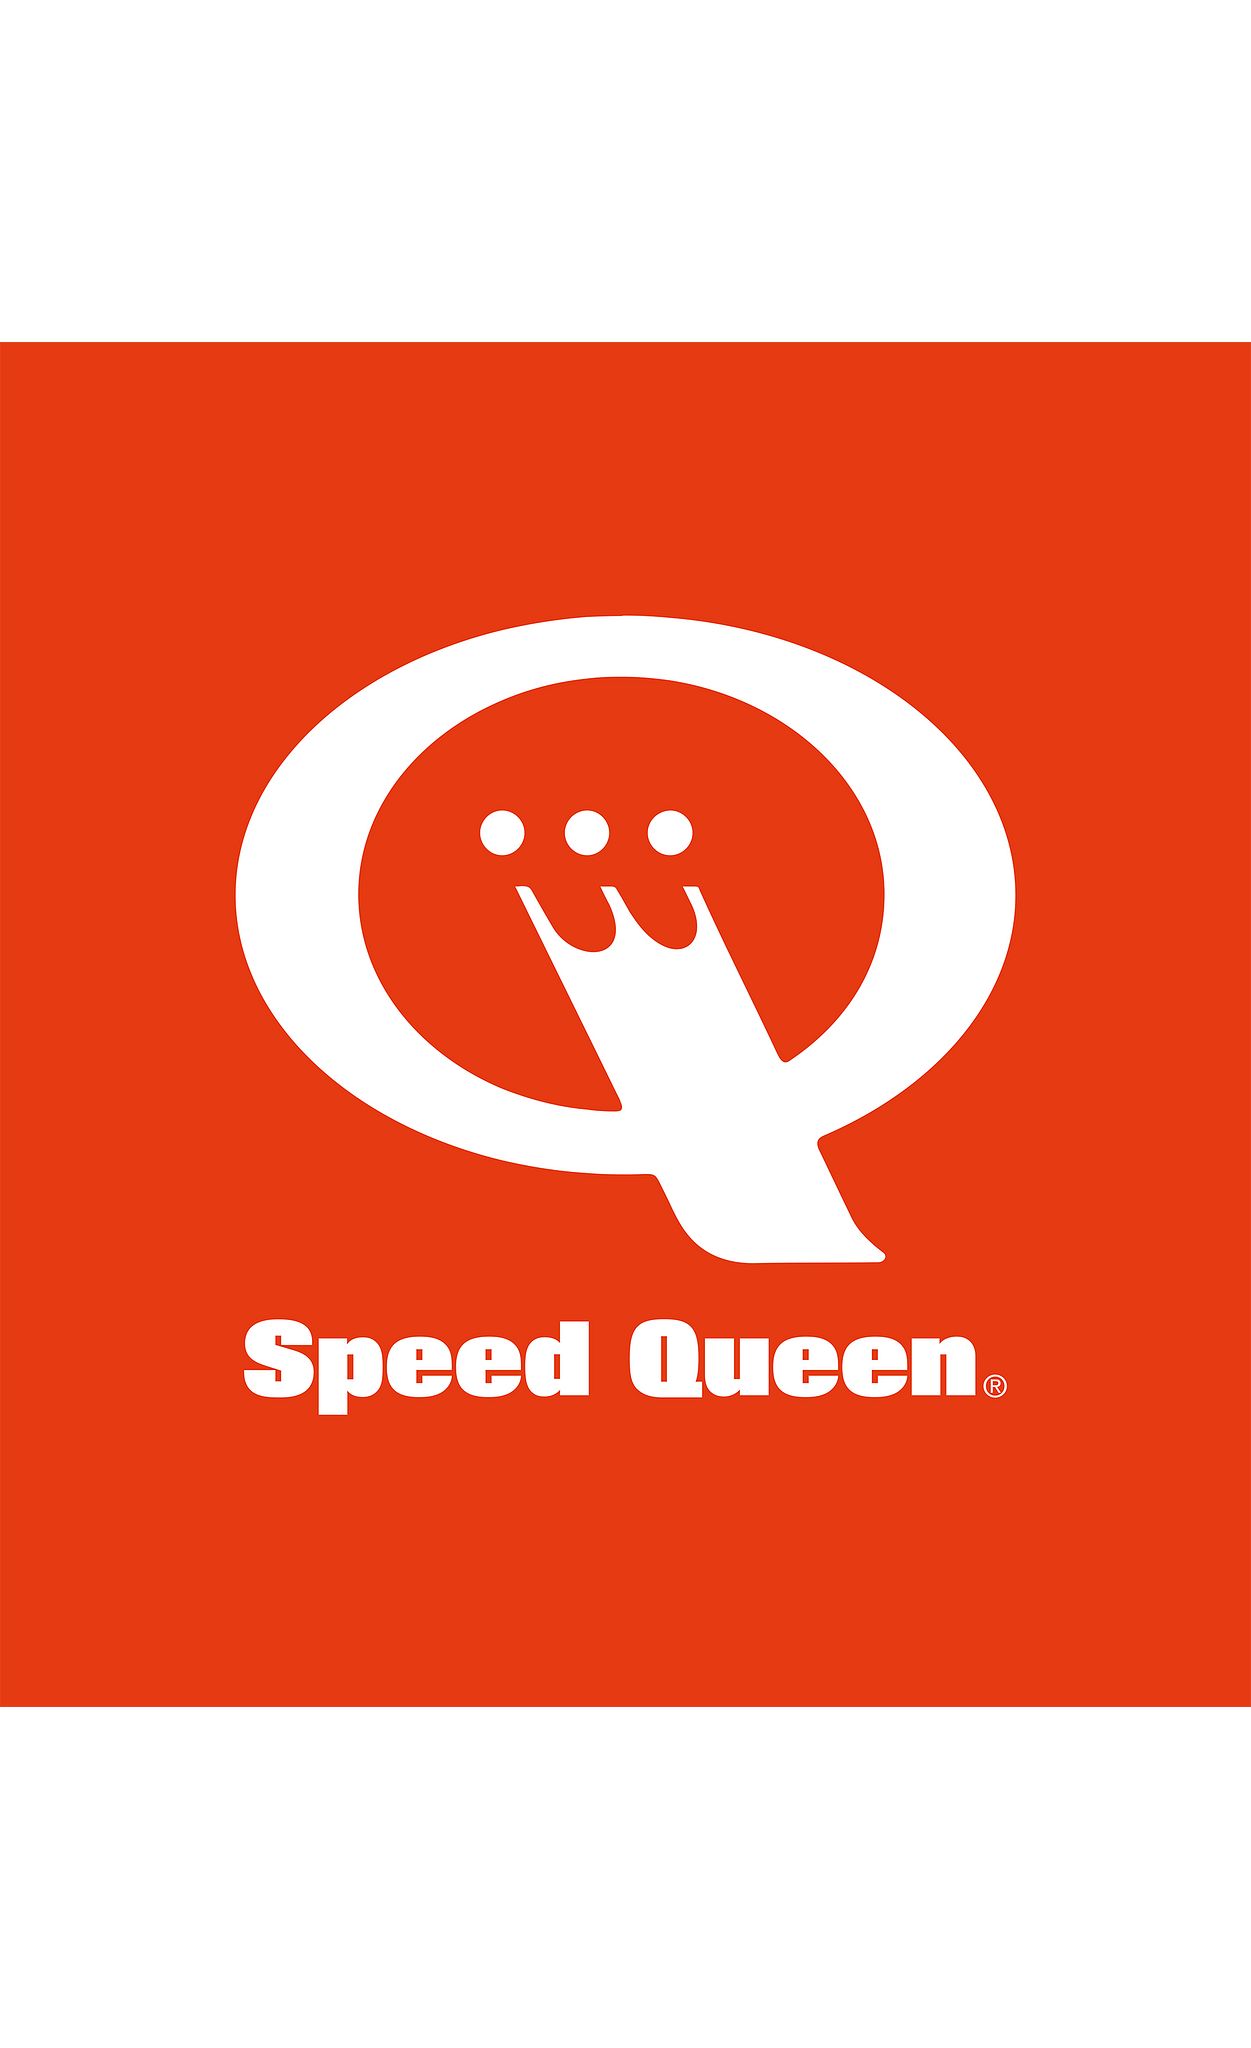 Speed Queen Wassalon